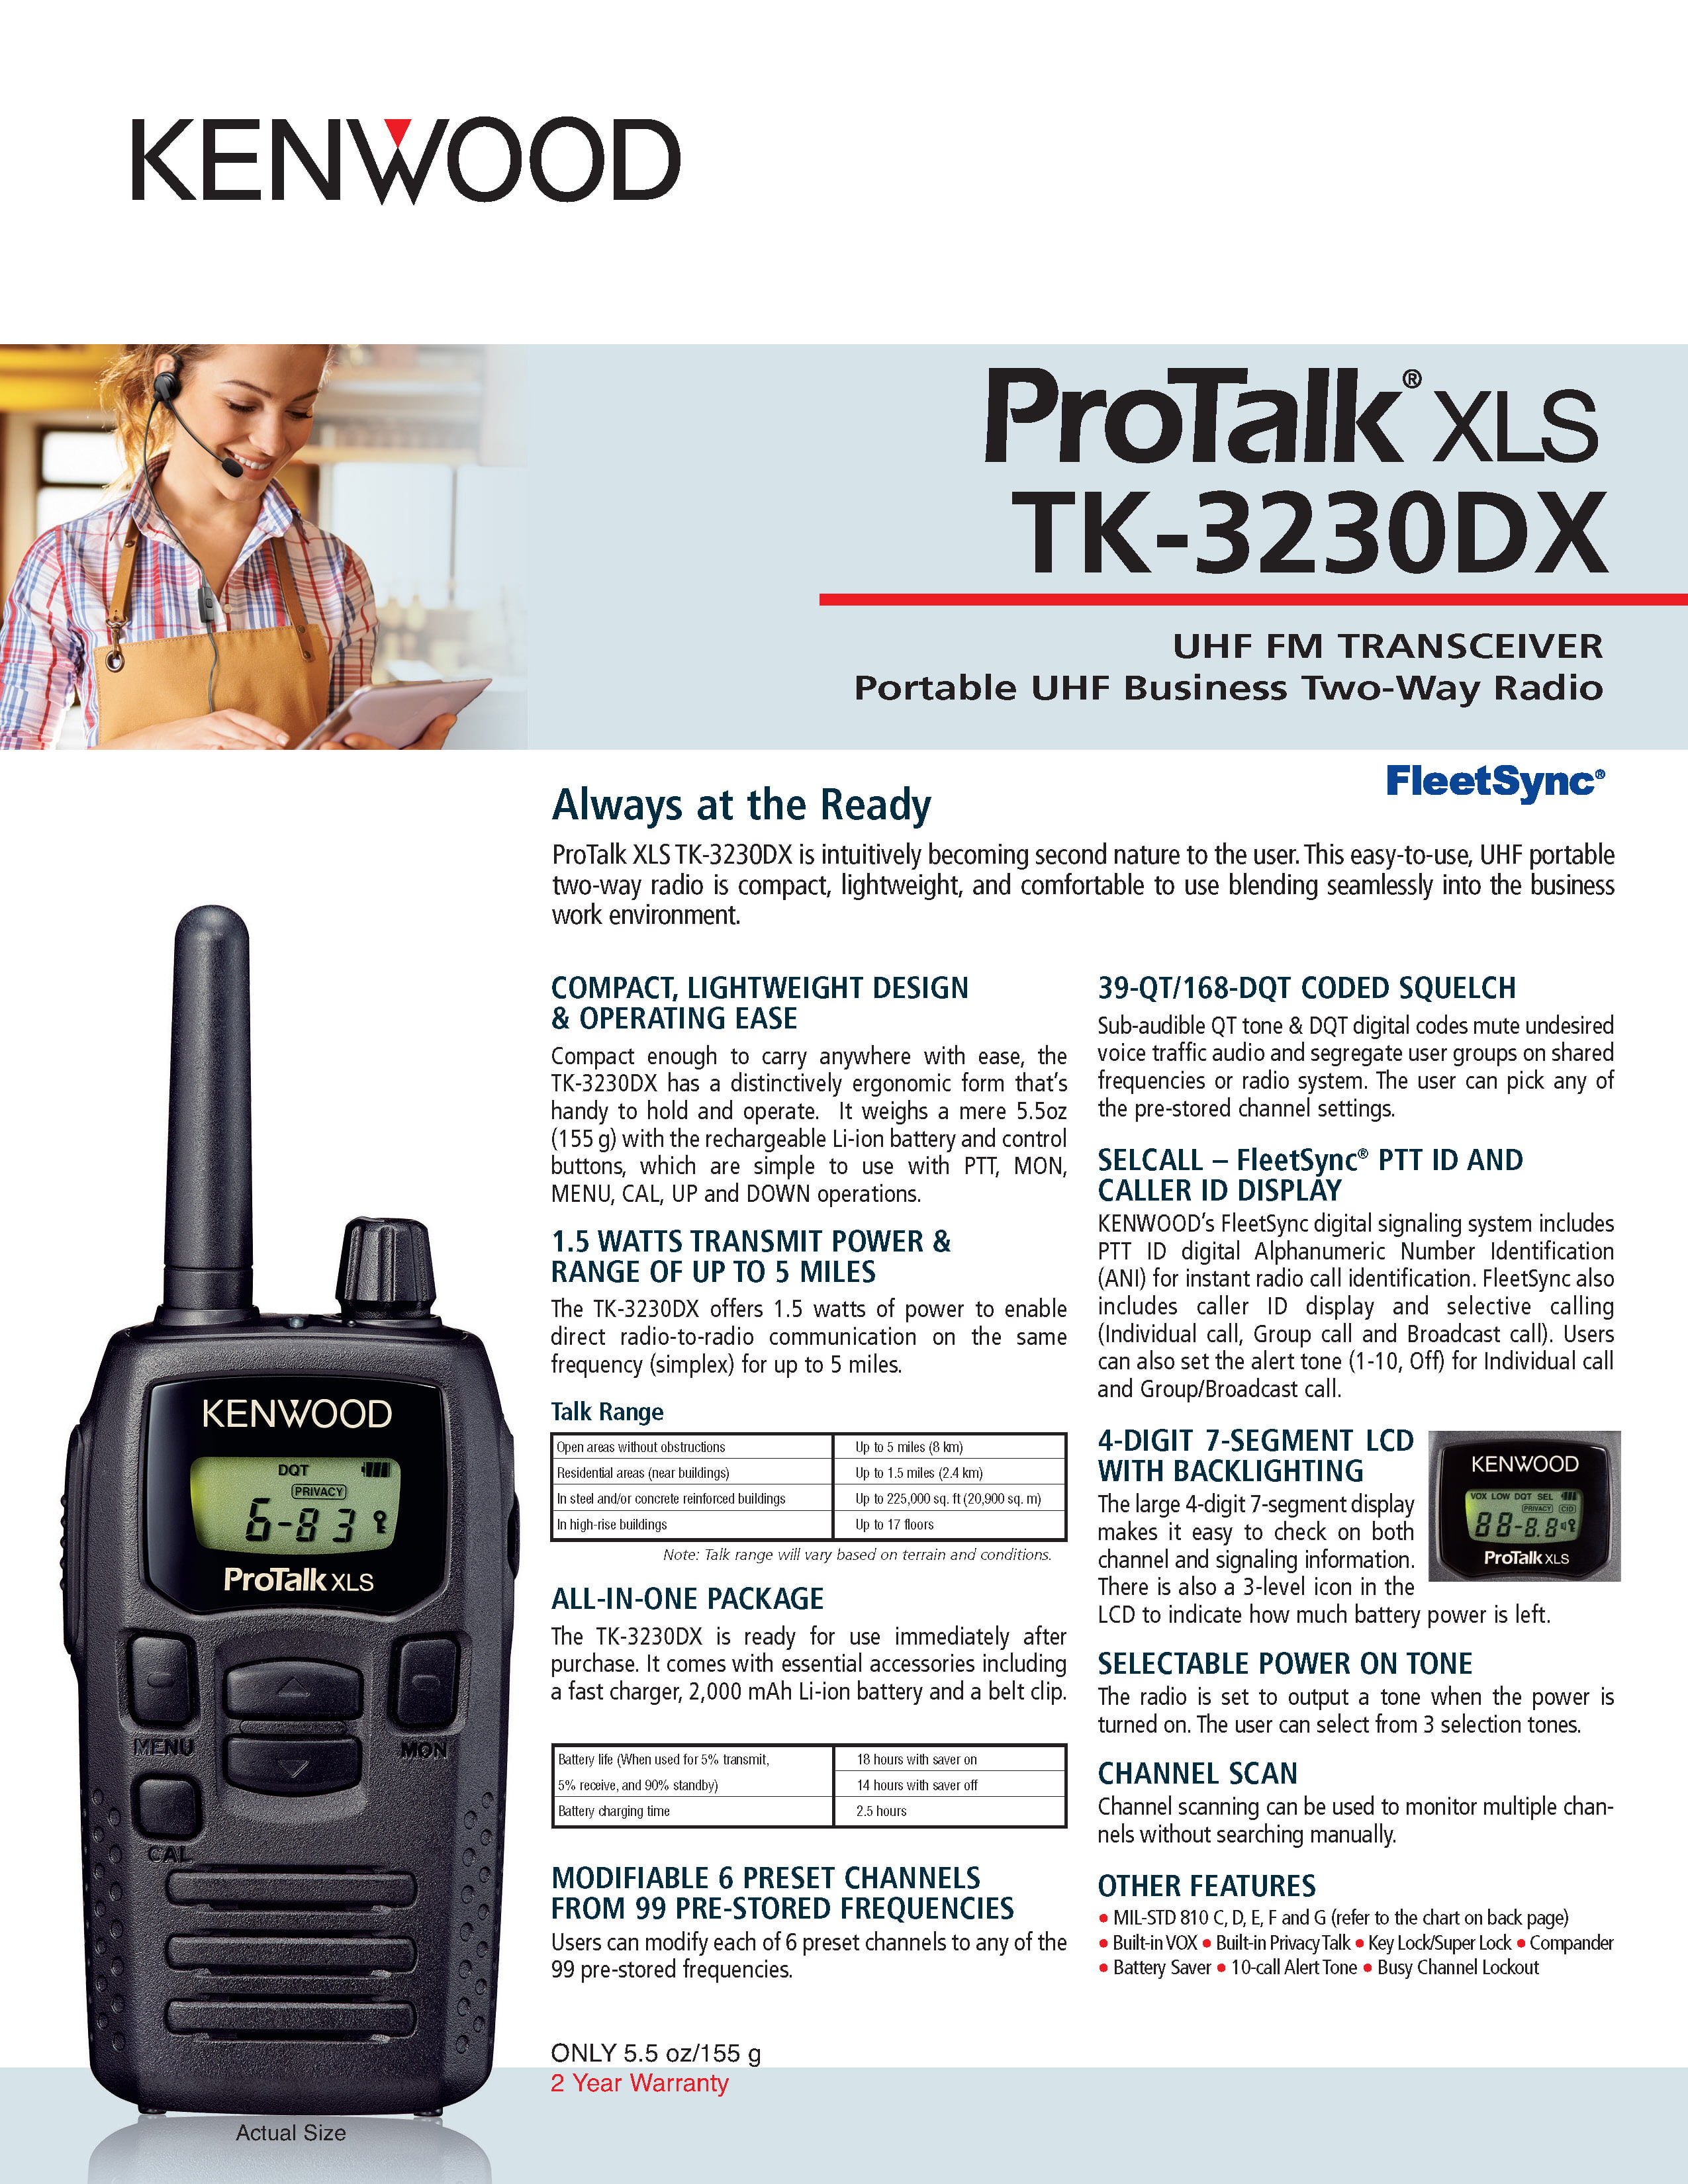 Kenwood TK-3230DX Protalk TK-3230DX 2-way Business